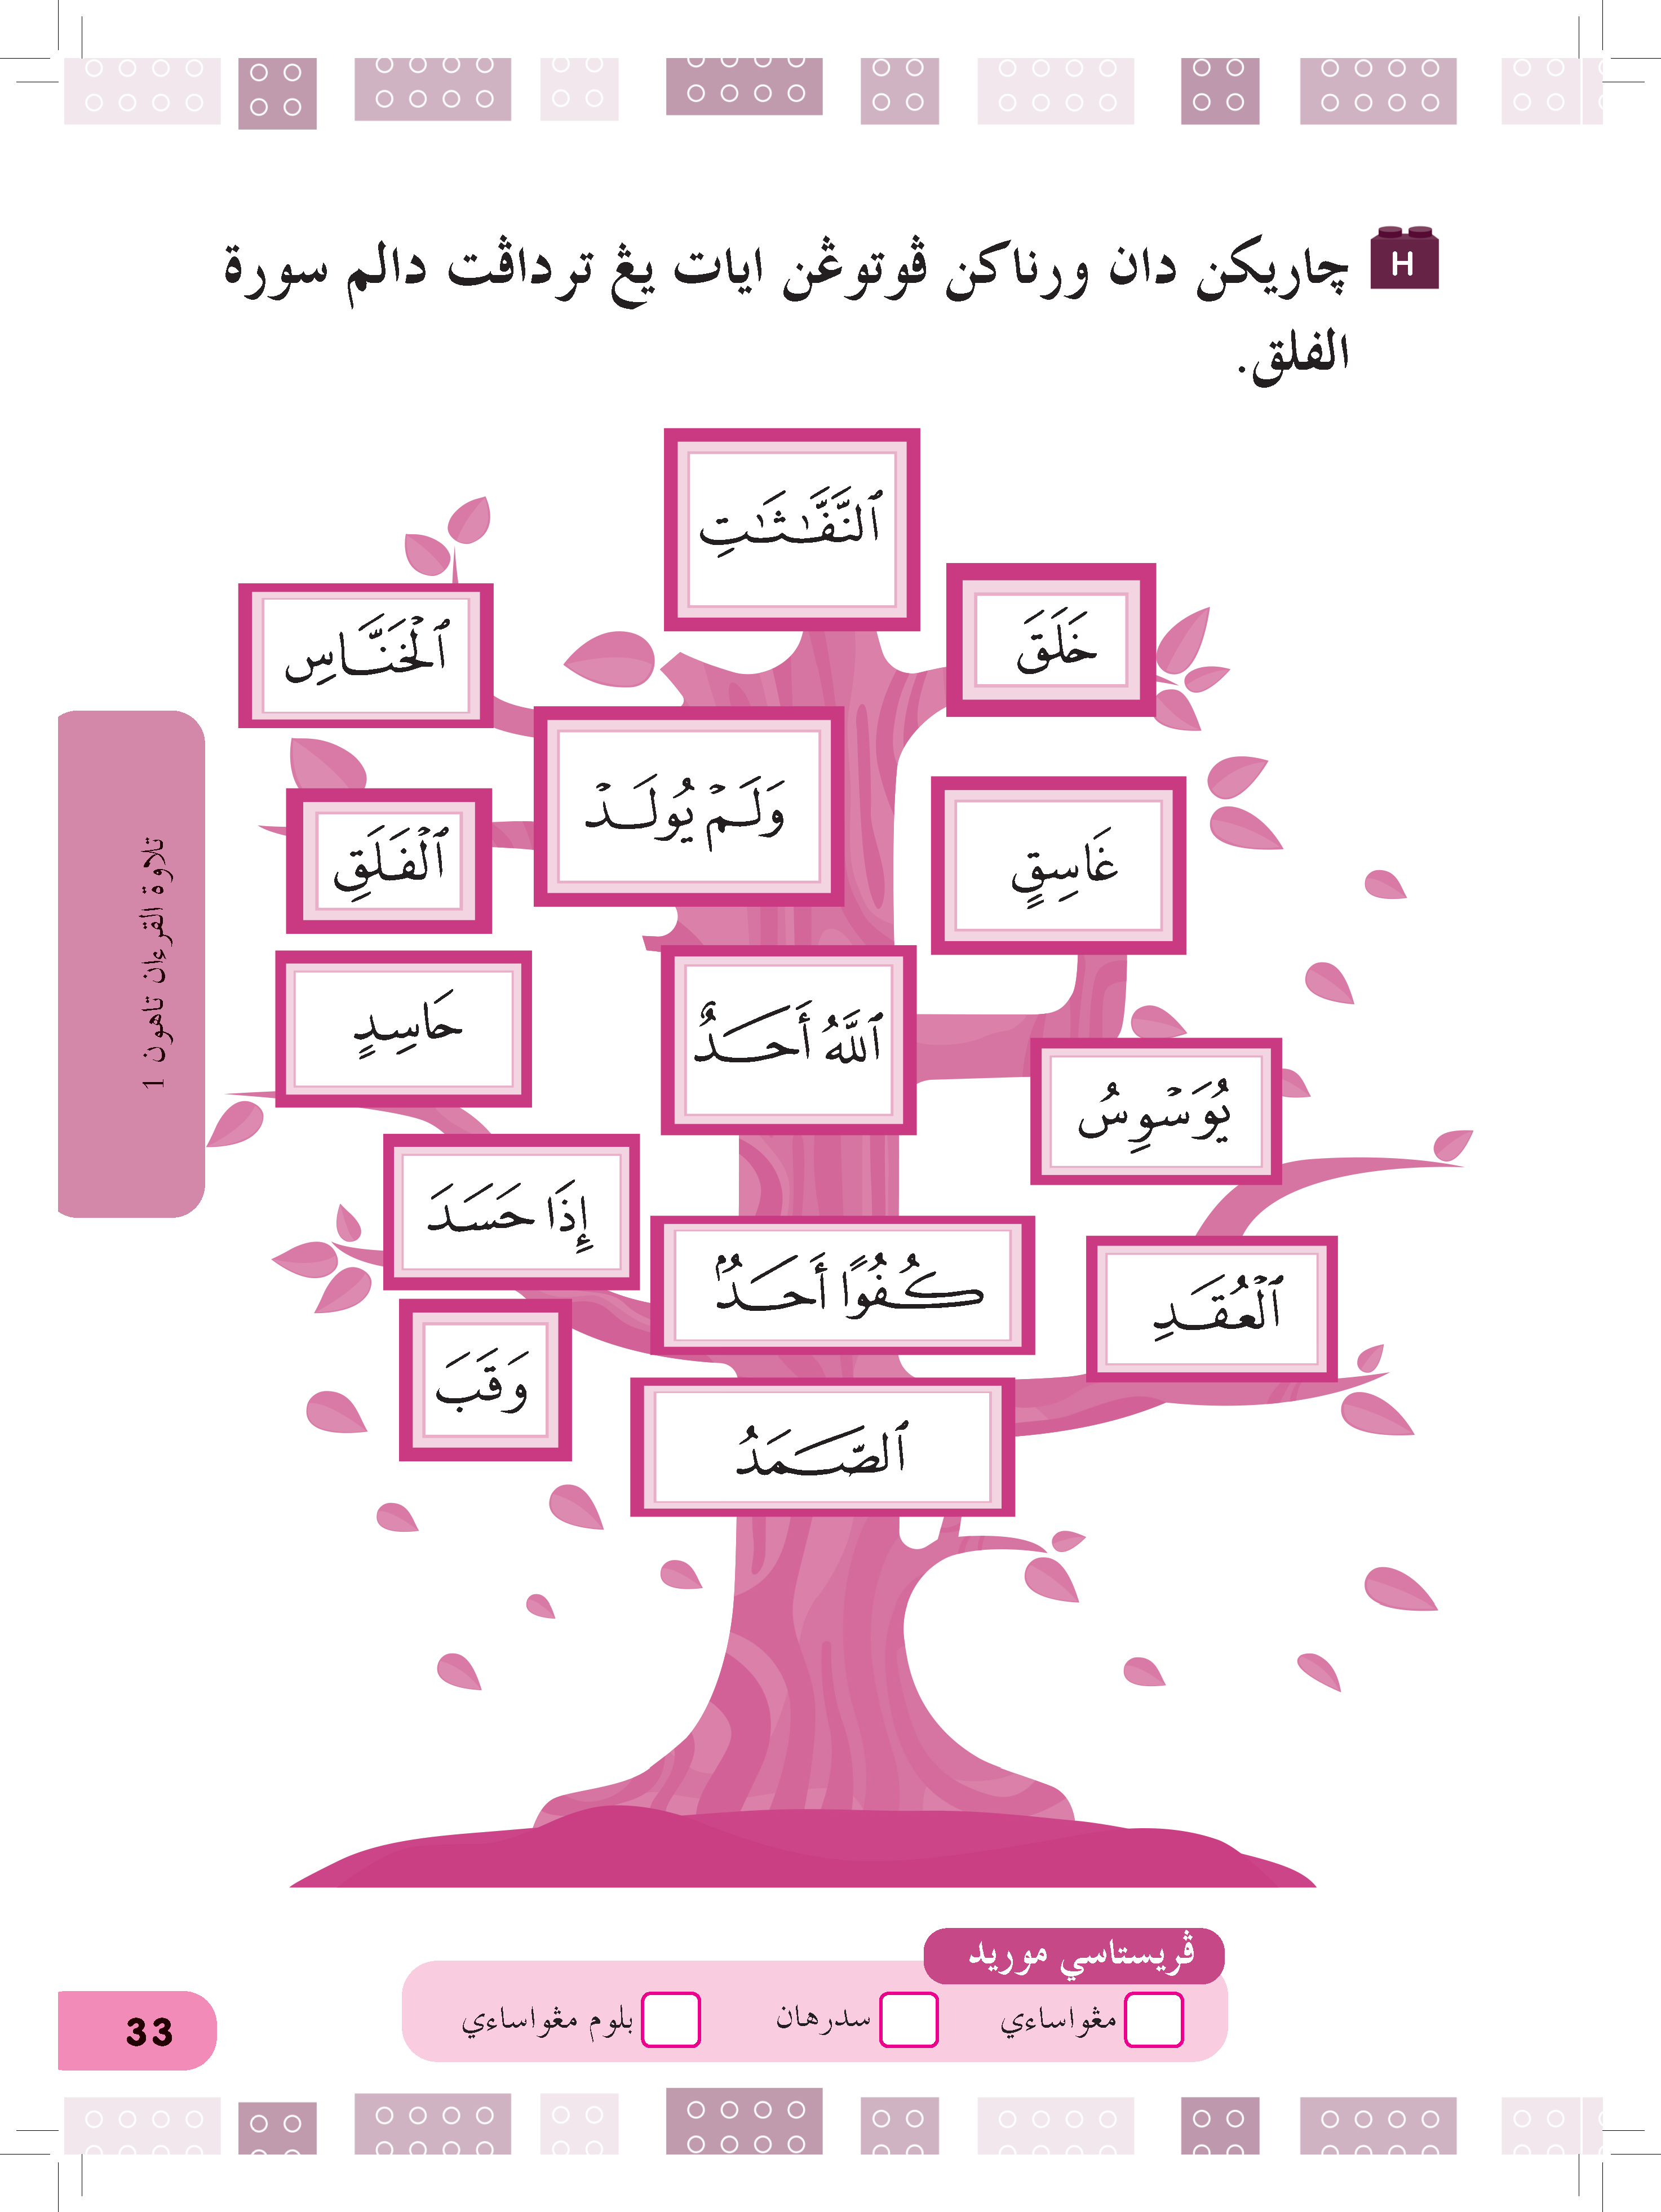 Siri Najah Kafa (Tilawah Al-Quran) Tahun 1 - (TBBS1216)